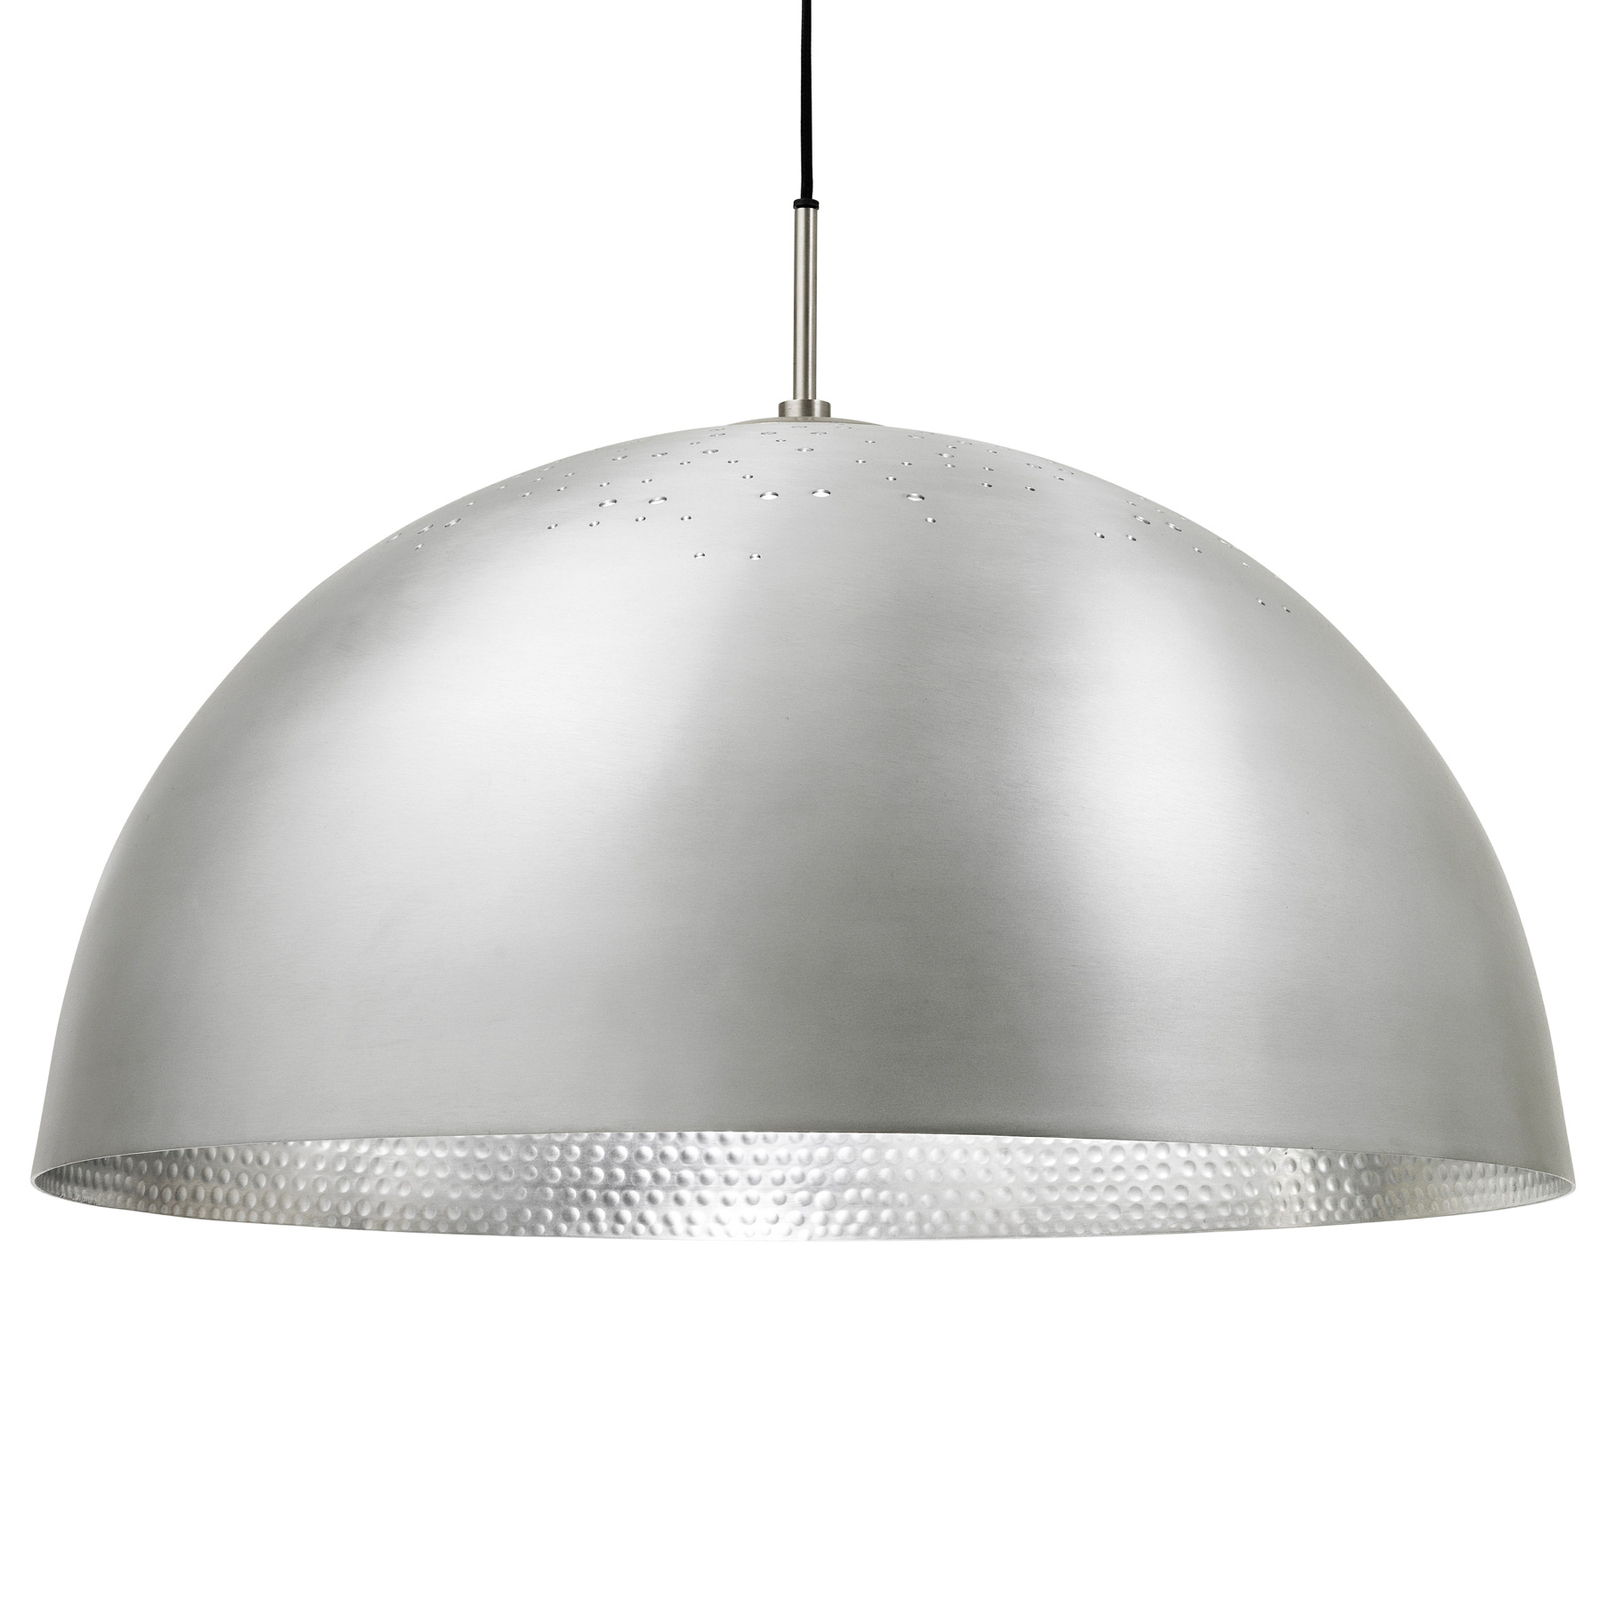 Lampa wisząca Mater Shade Light, aluminium, Ø 60 cm